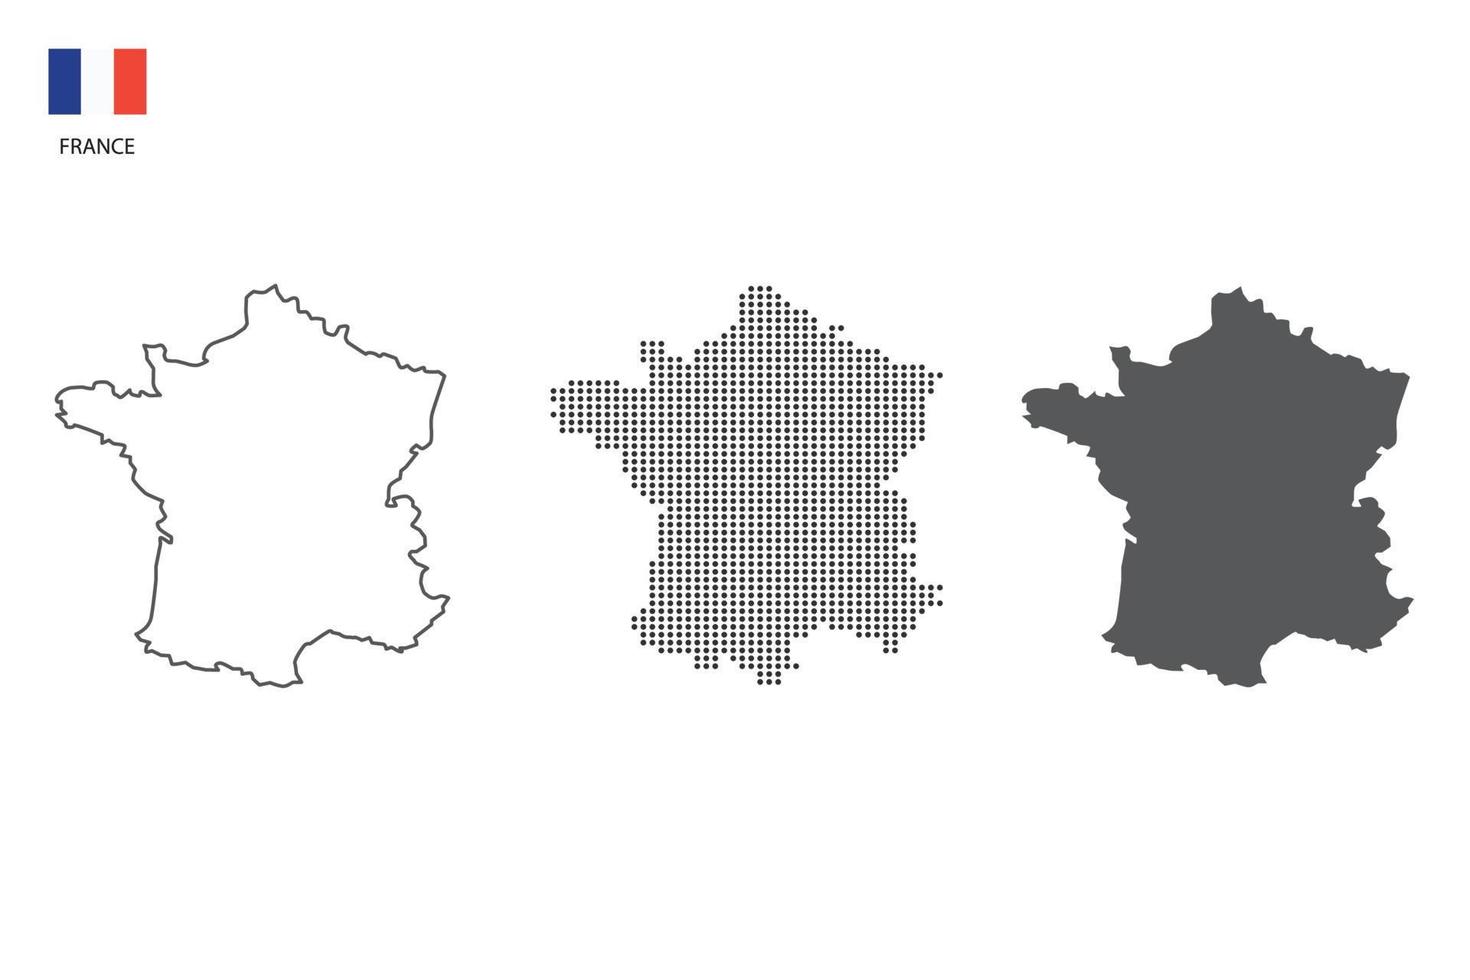 3 versões do vetor da cidade do mapa da frança pelo estilo de simplicidade de contorno preto fino, estilo de ponto preto e estilo de sombra escura. tudo no fundo branco.